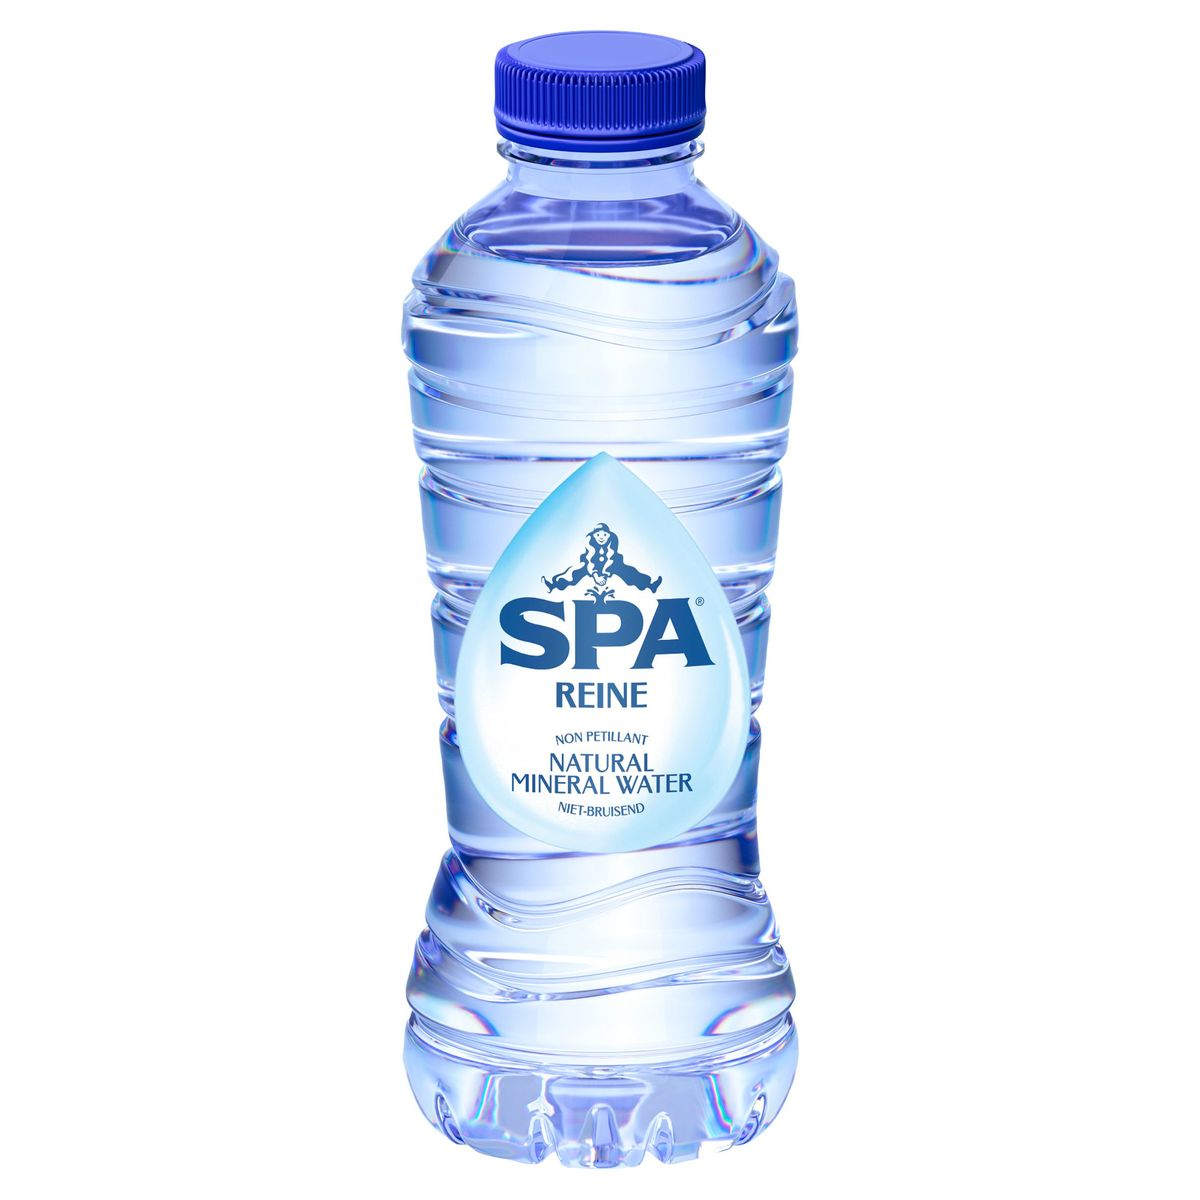 SPA REINE Niet-Bruisend Natuurlijk Mineraalwater 33cl